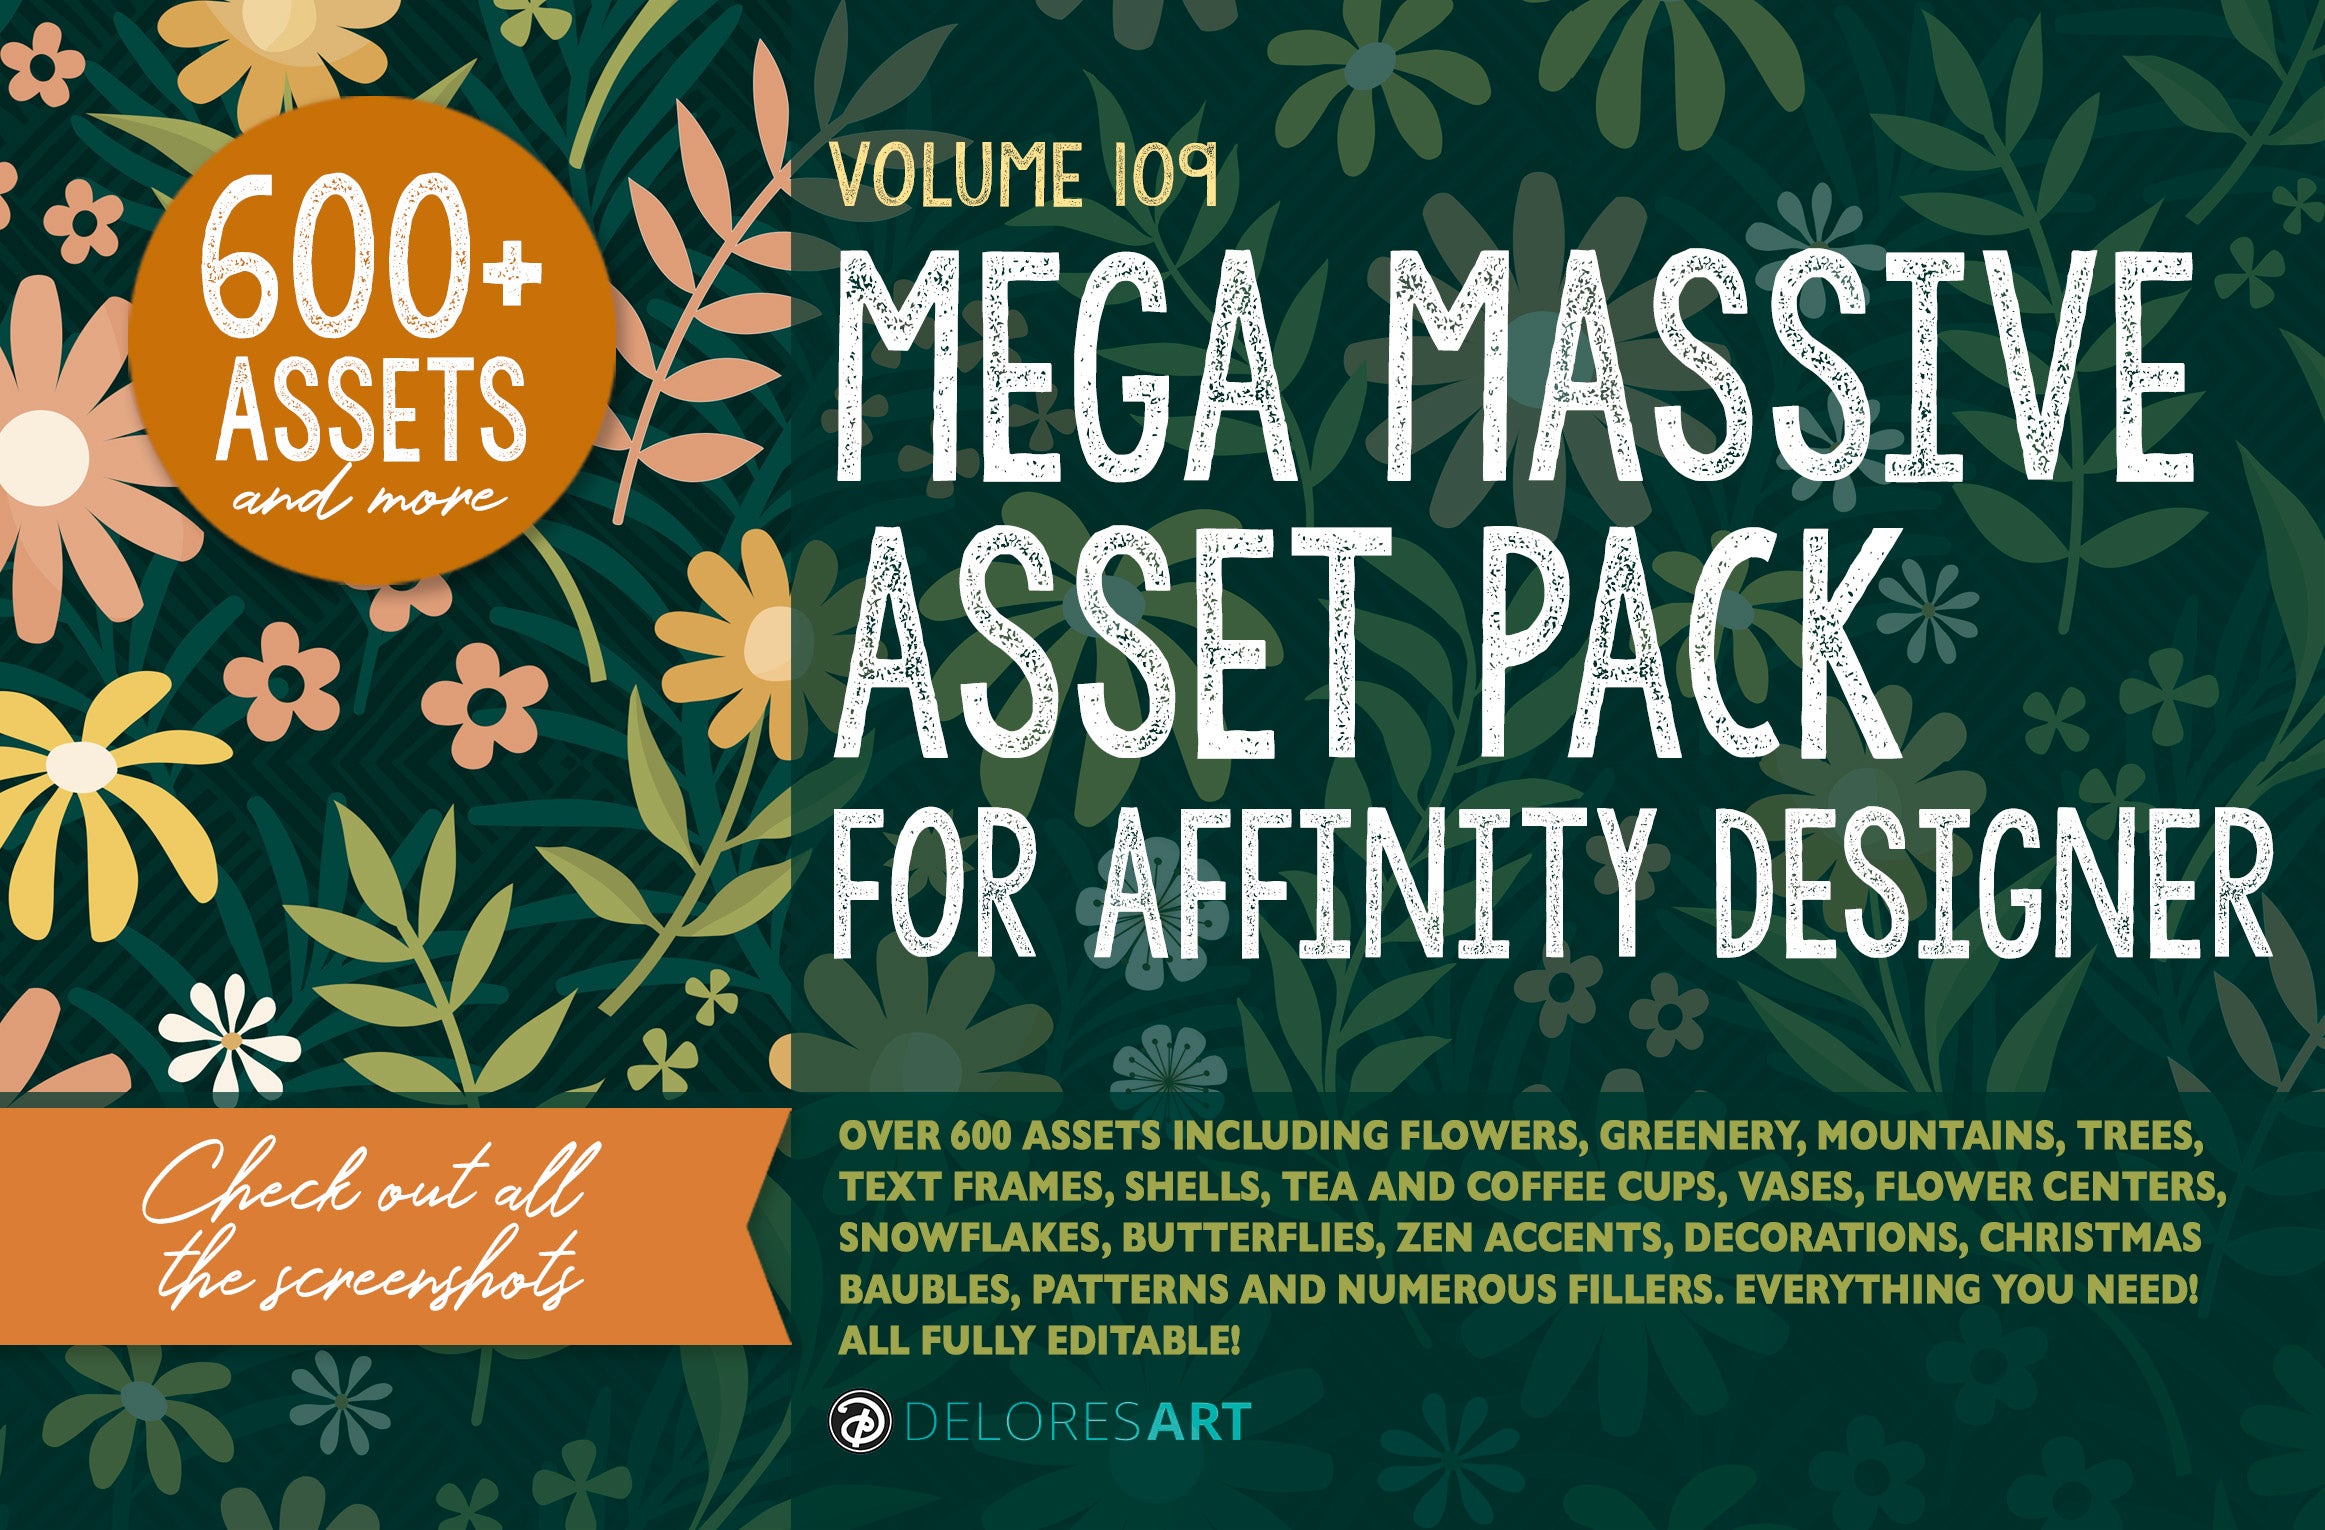 Volume 109 - Mega Asset Pack for Affinity Designer (600+ Assets)